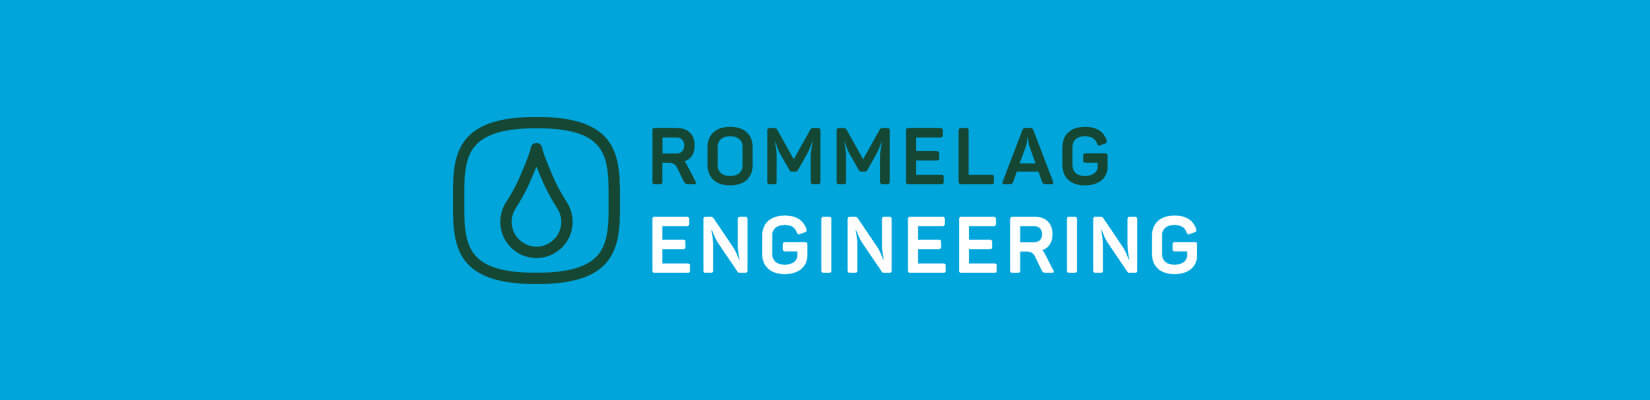 rommelag-engineering-logo